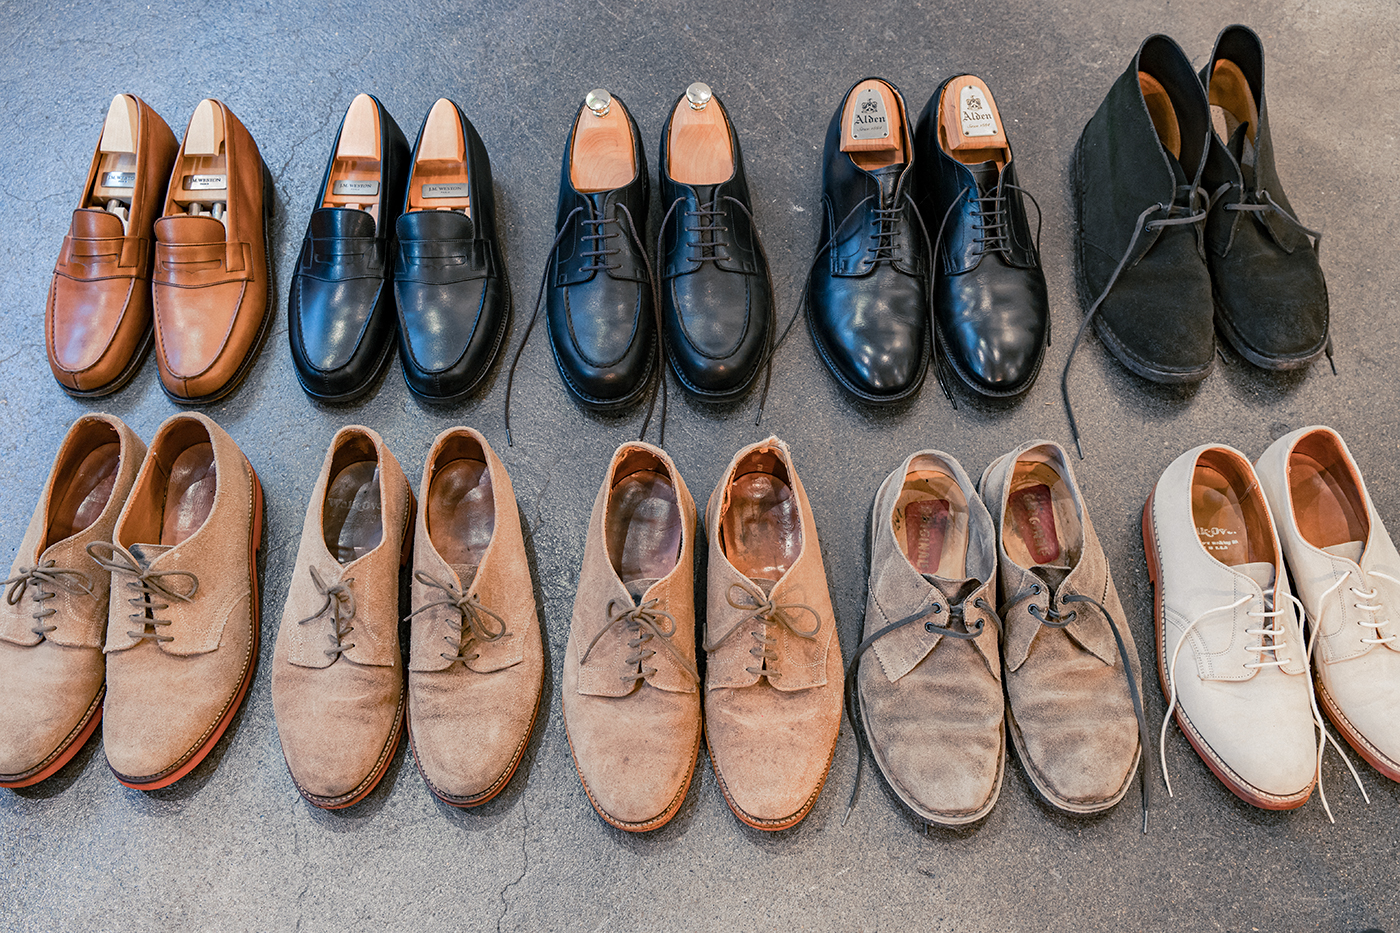 ジョセフ チーニー 「Riprap」デザイナー 西野 裕人 生産国に捉われず、琴線に触れた革靴を楽しむ